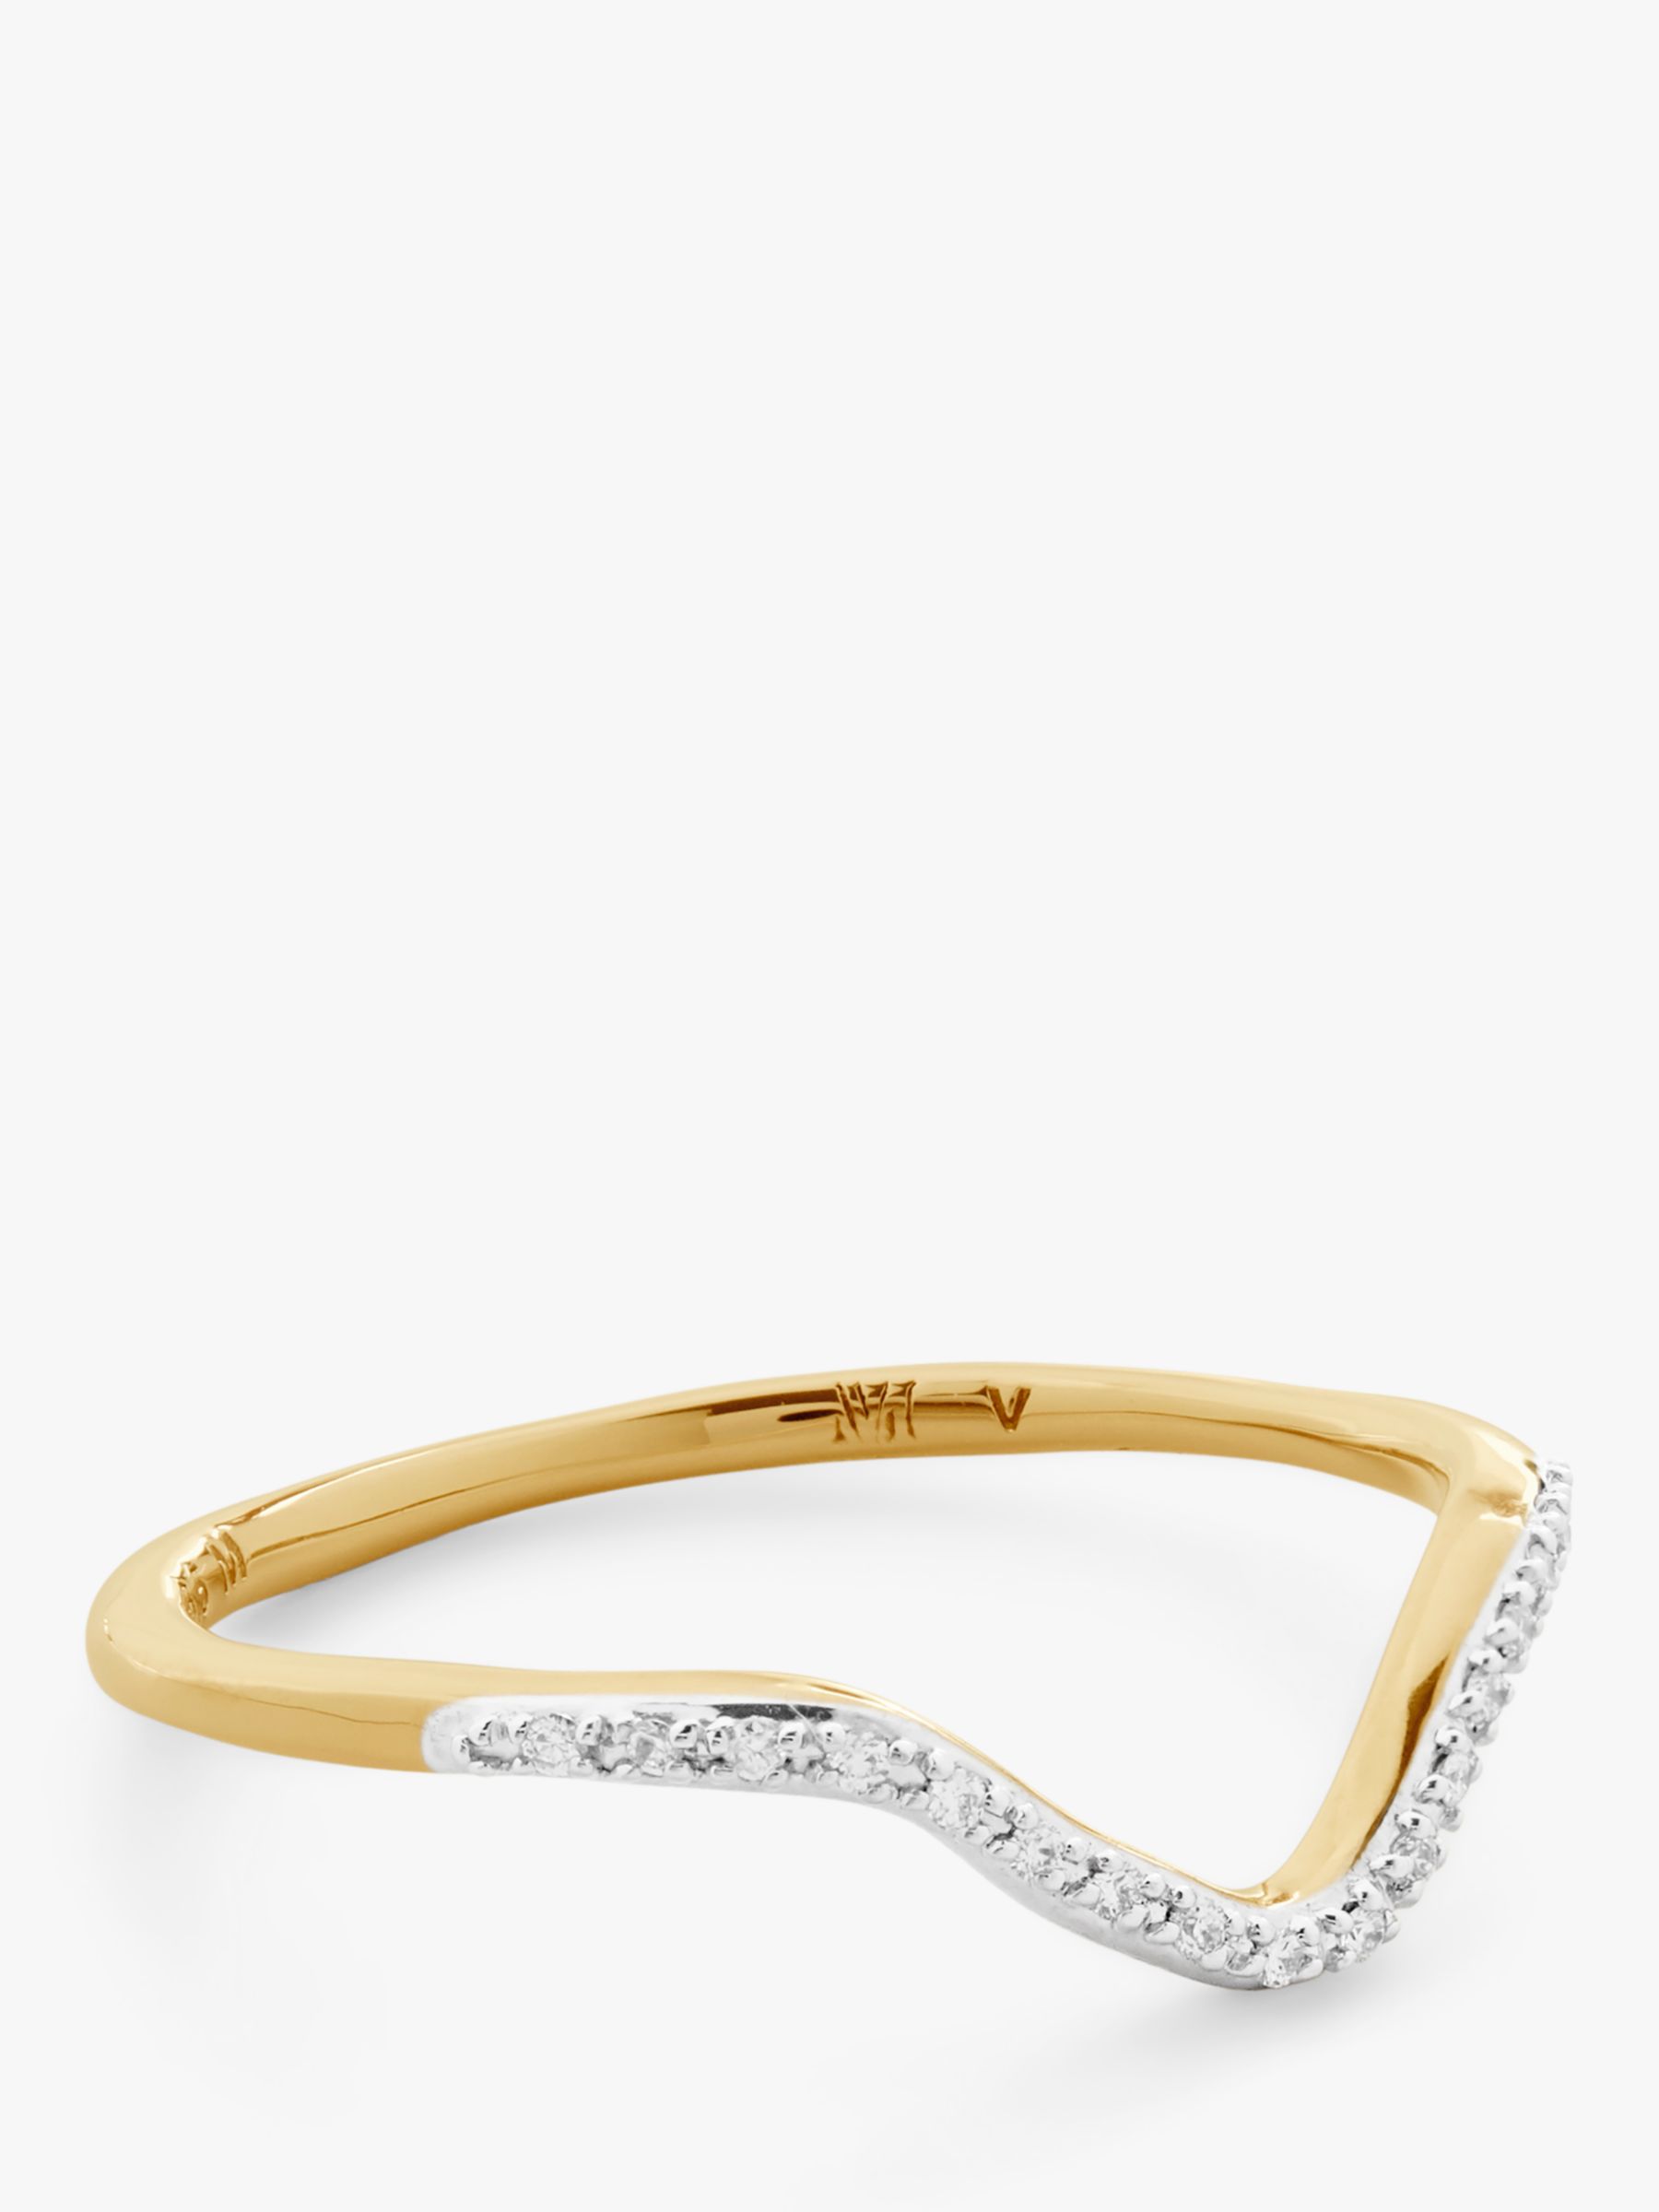 Monica Vinader Riva Wishbone Diamond Ring, Gold, P